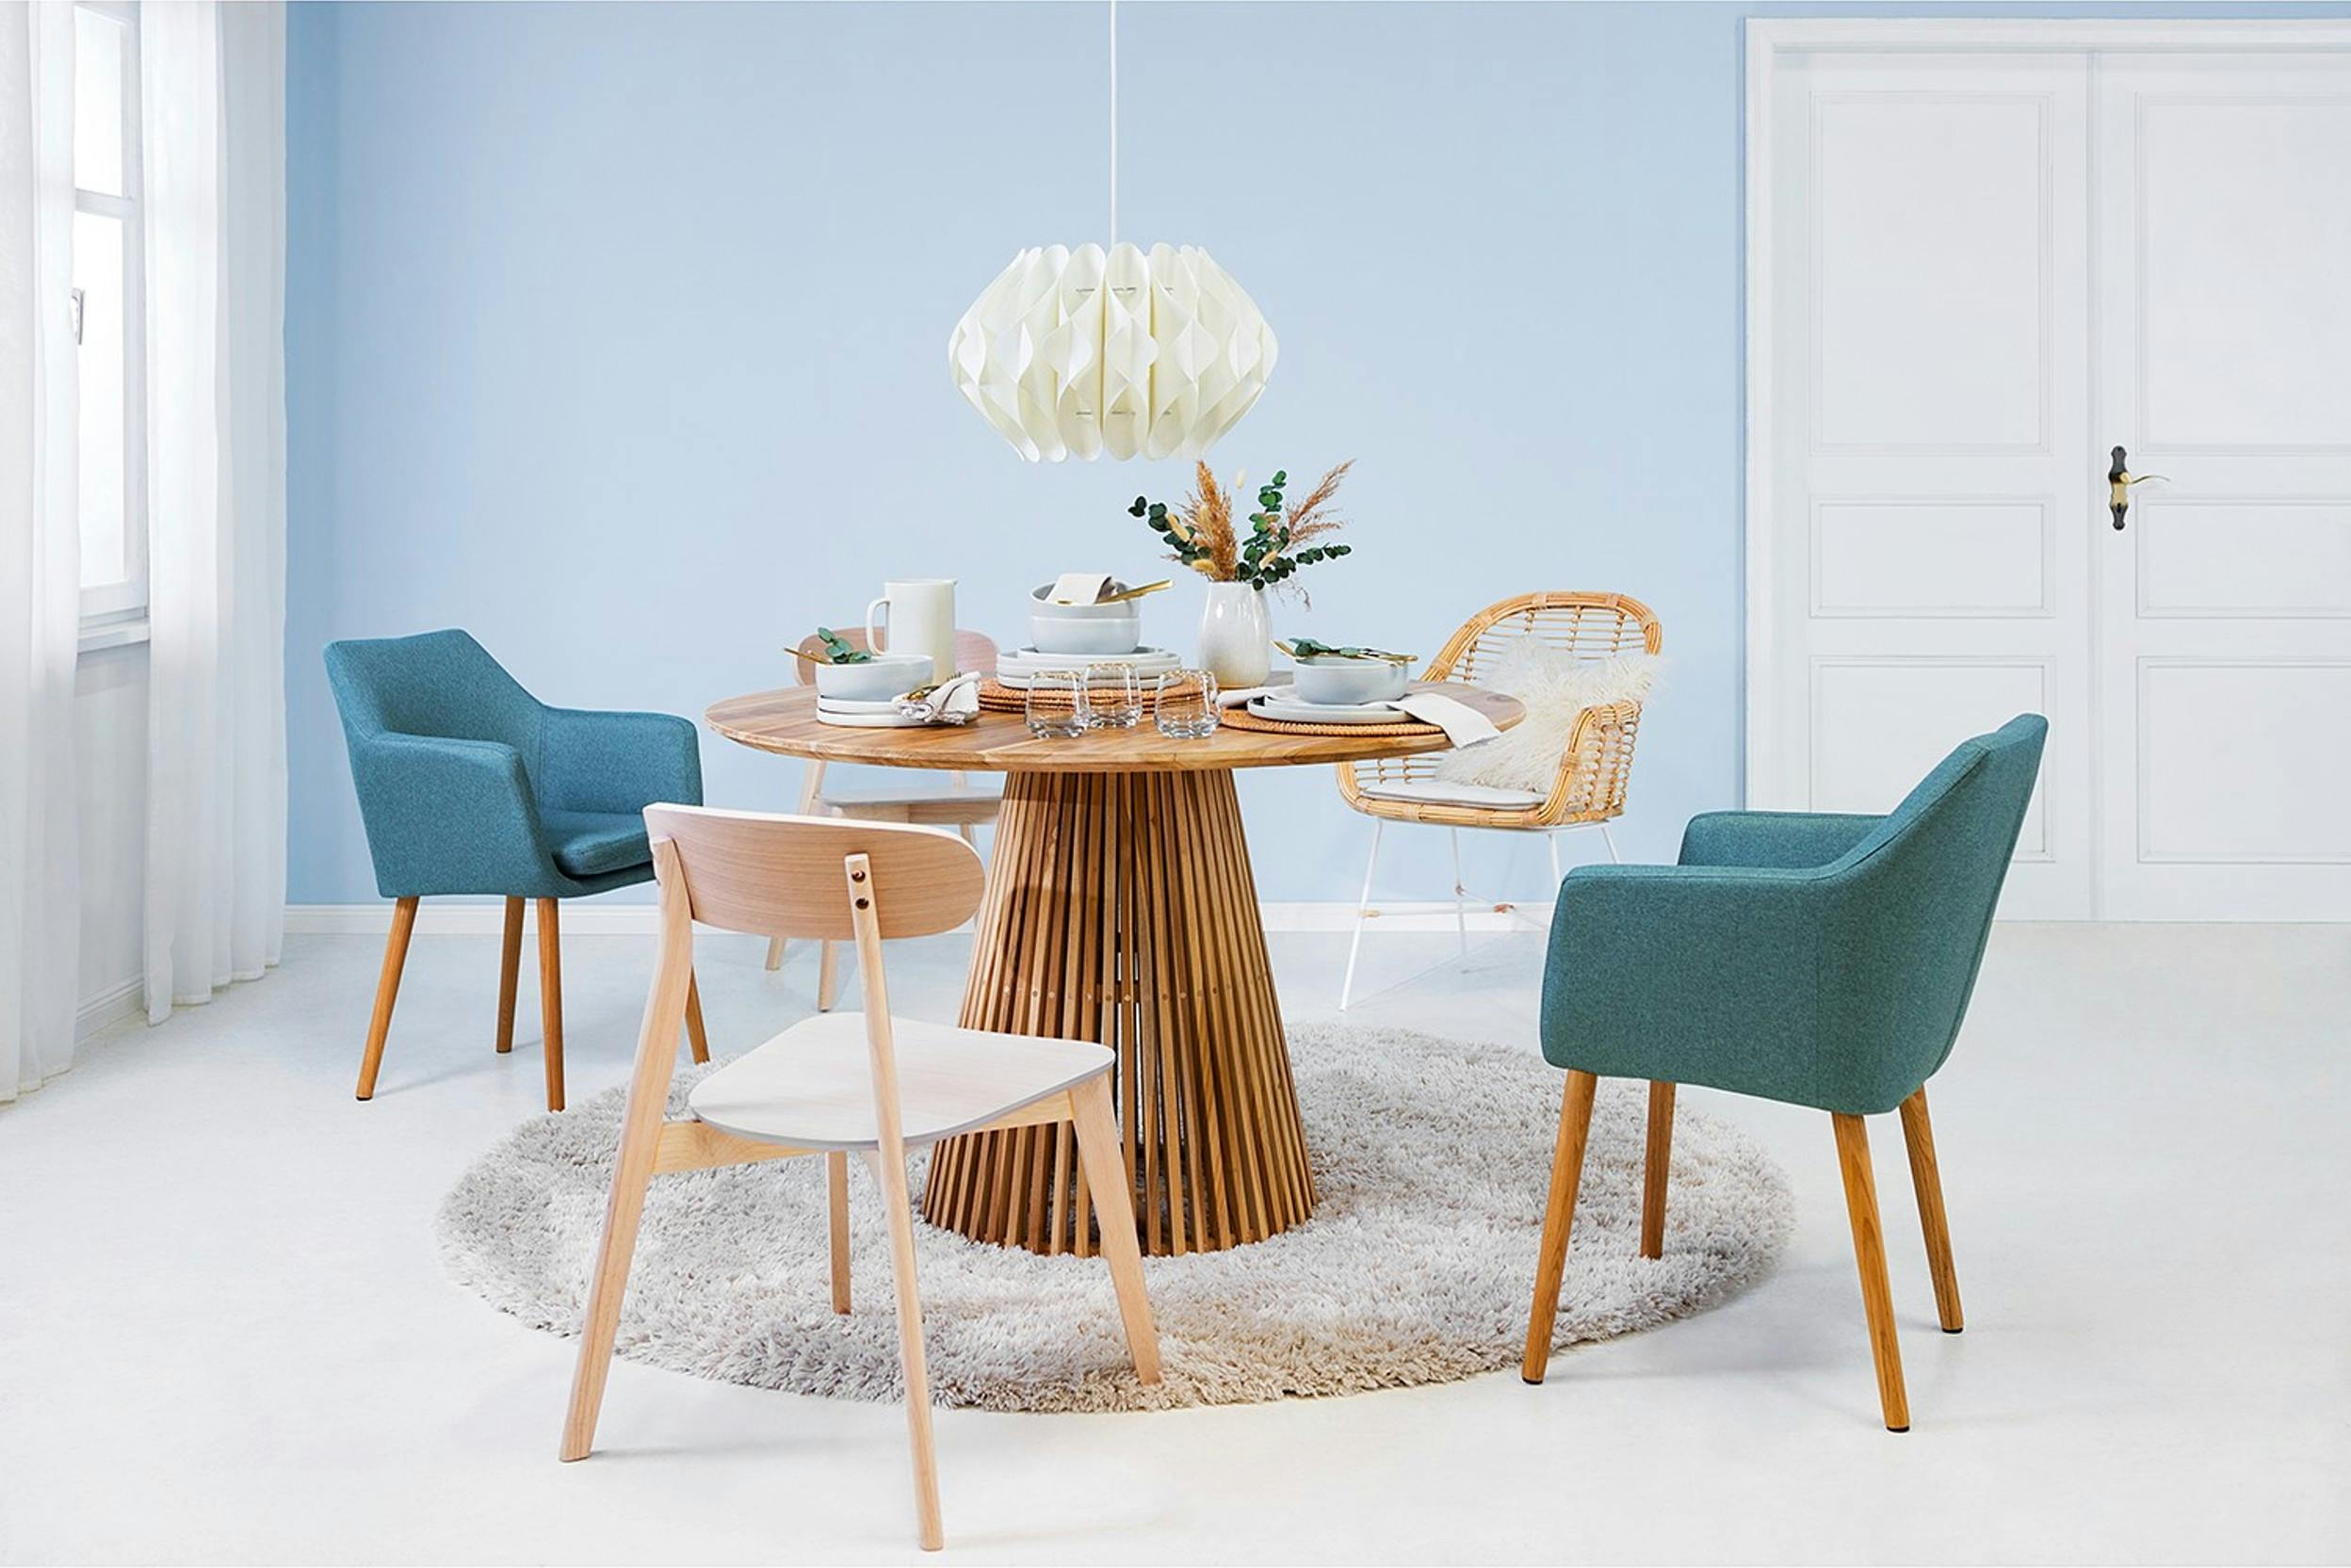 Moderner runder Esstisch mit 5 verschiedenen Stühlen vor einer hellblauen Wand